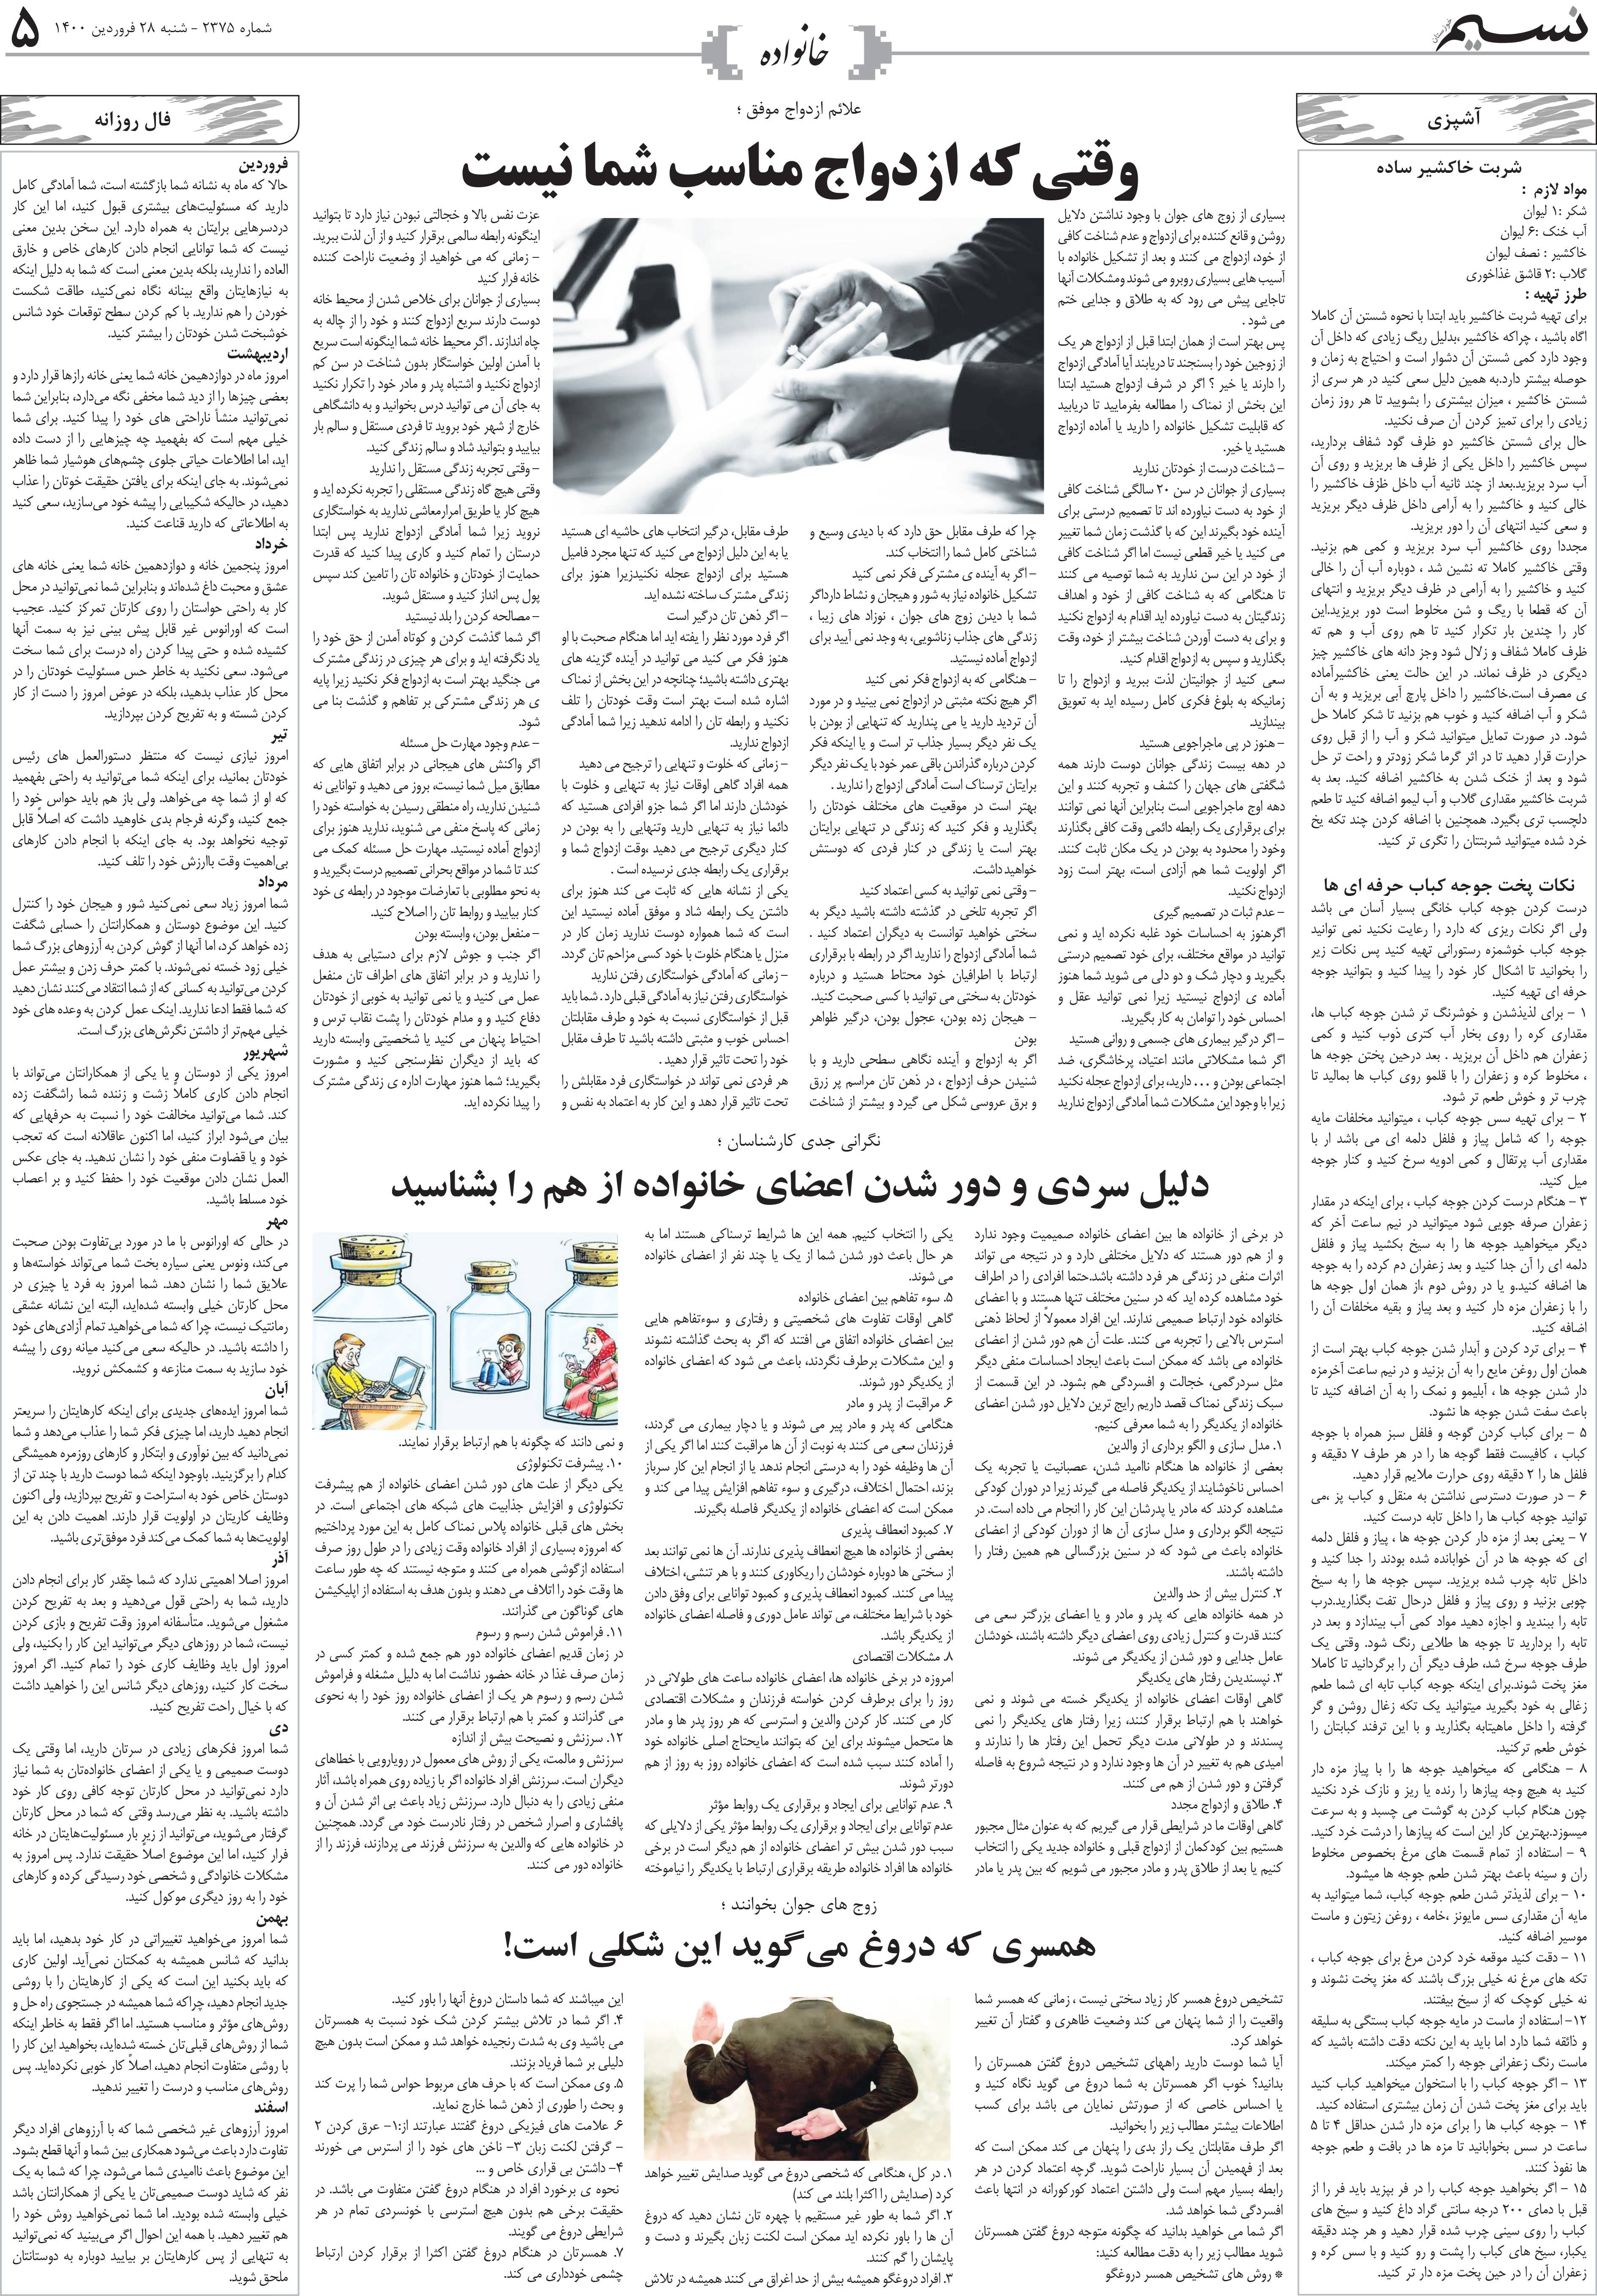 صفحه خانواده روزنامه نسیم شماره 2375